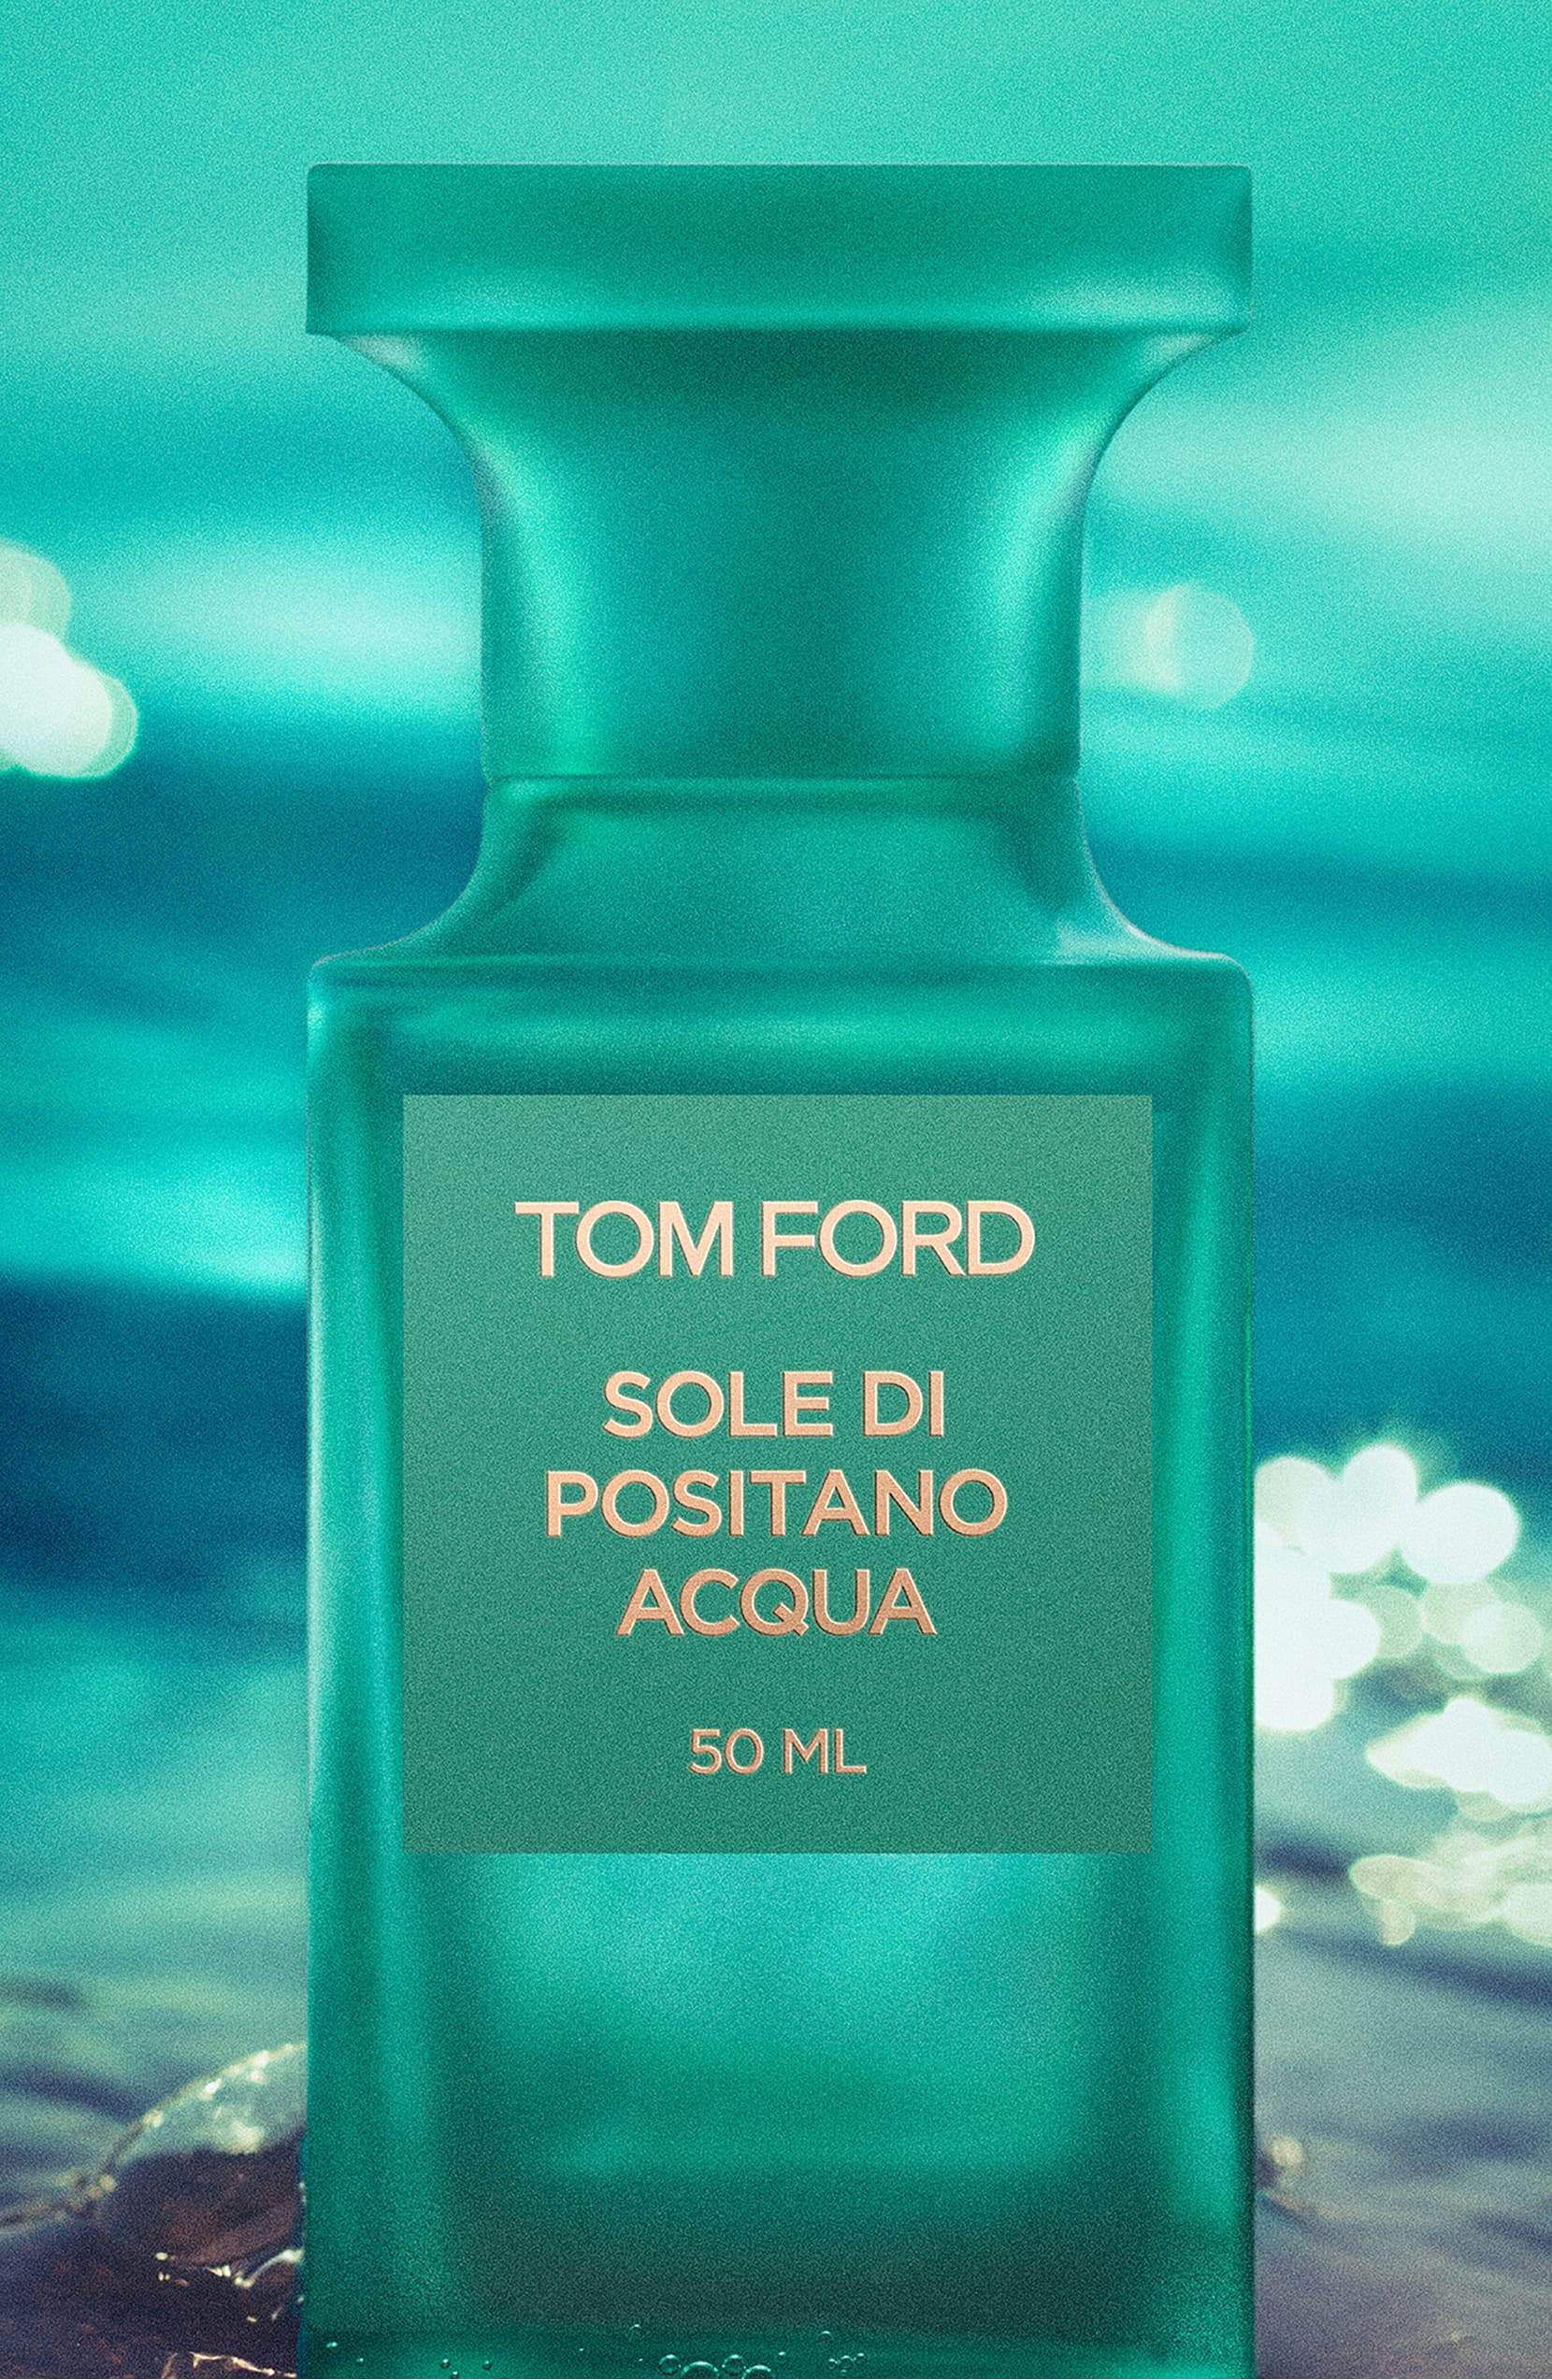 TOM FORD Sole di Positano Acqua Eau de Toilette Spray 3.4 oz - eCosmeticWorld